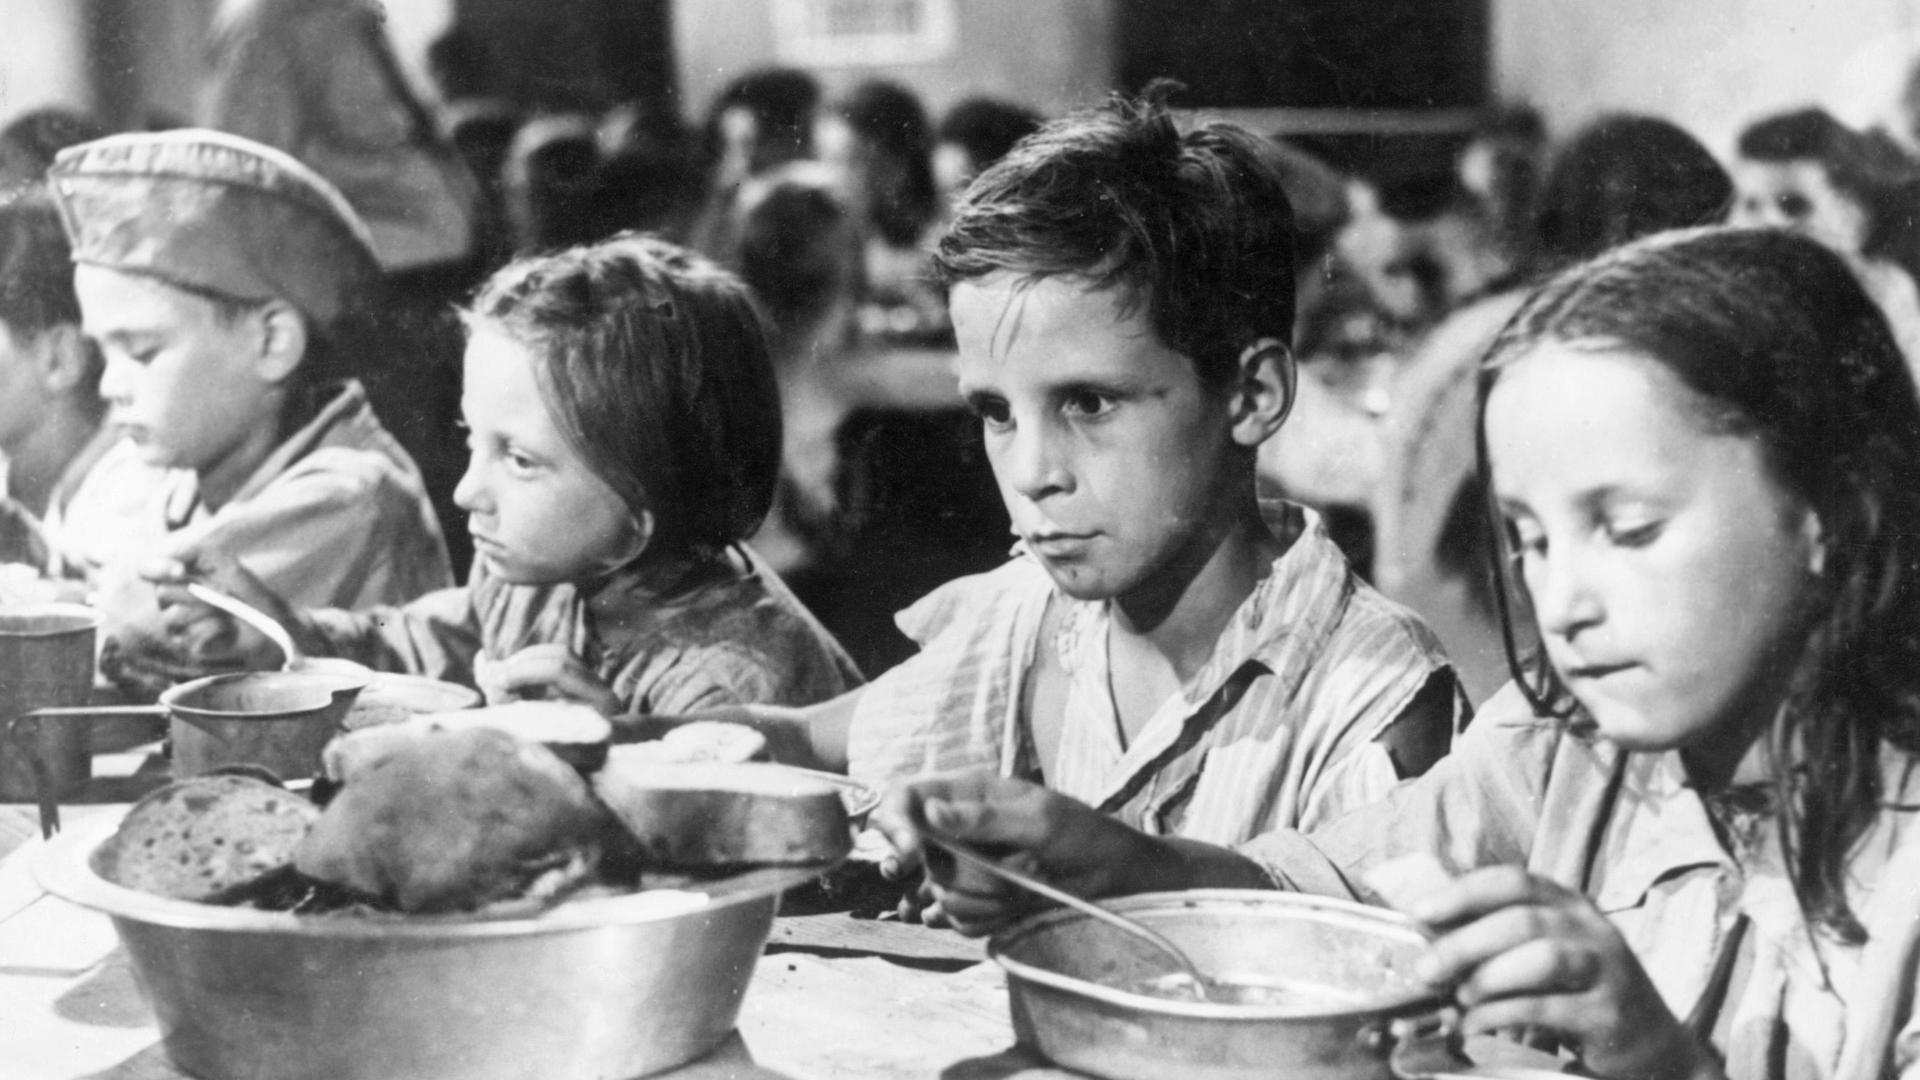 Mehrere Kinder essen auf dem Schwarz-Weiß-Bild an einem Tisch aus Blechtellern. Sie wirken ausgemergelt, die Augen eines Jungen sind leer.